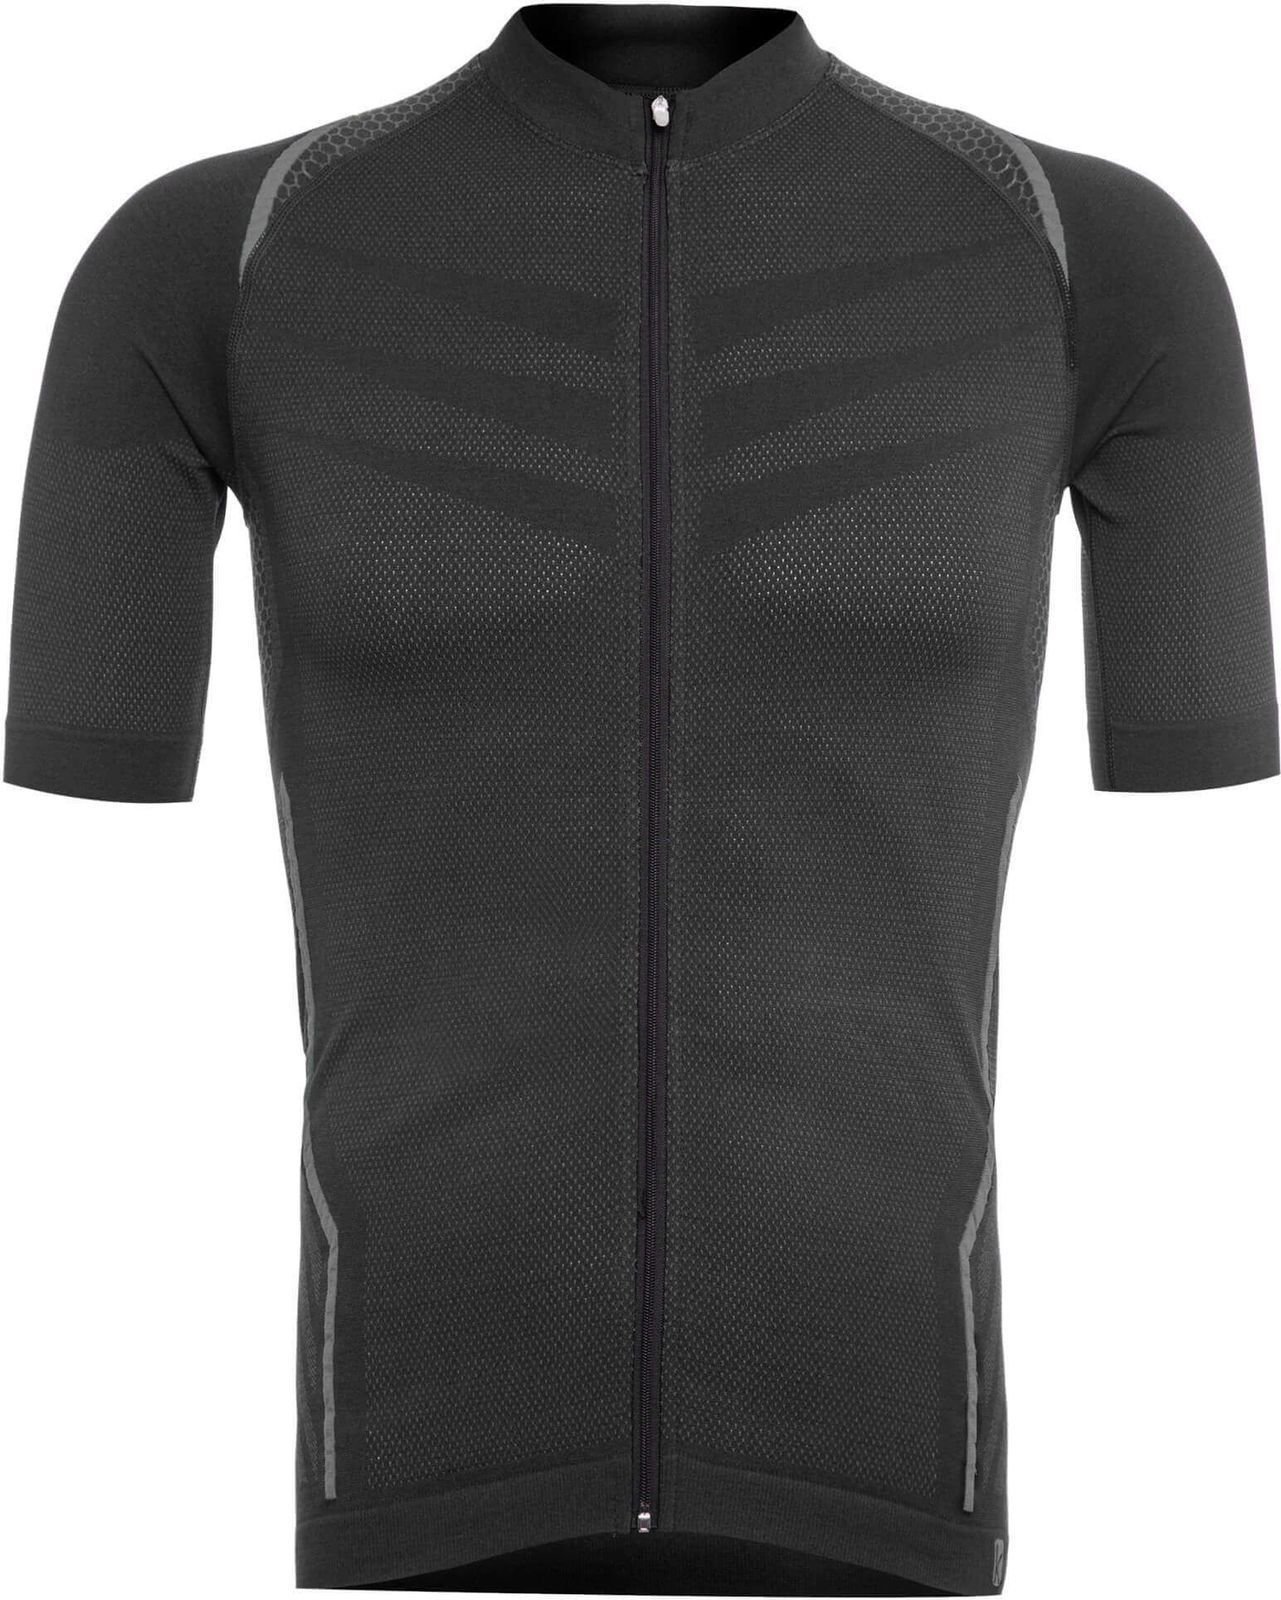 Camisola de ciclismo Funkier Respirare Jersey Preto-Grey XL/2XL